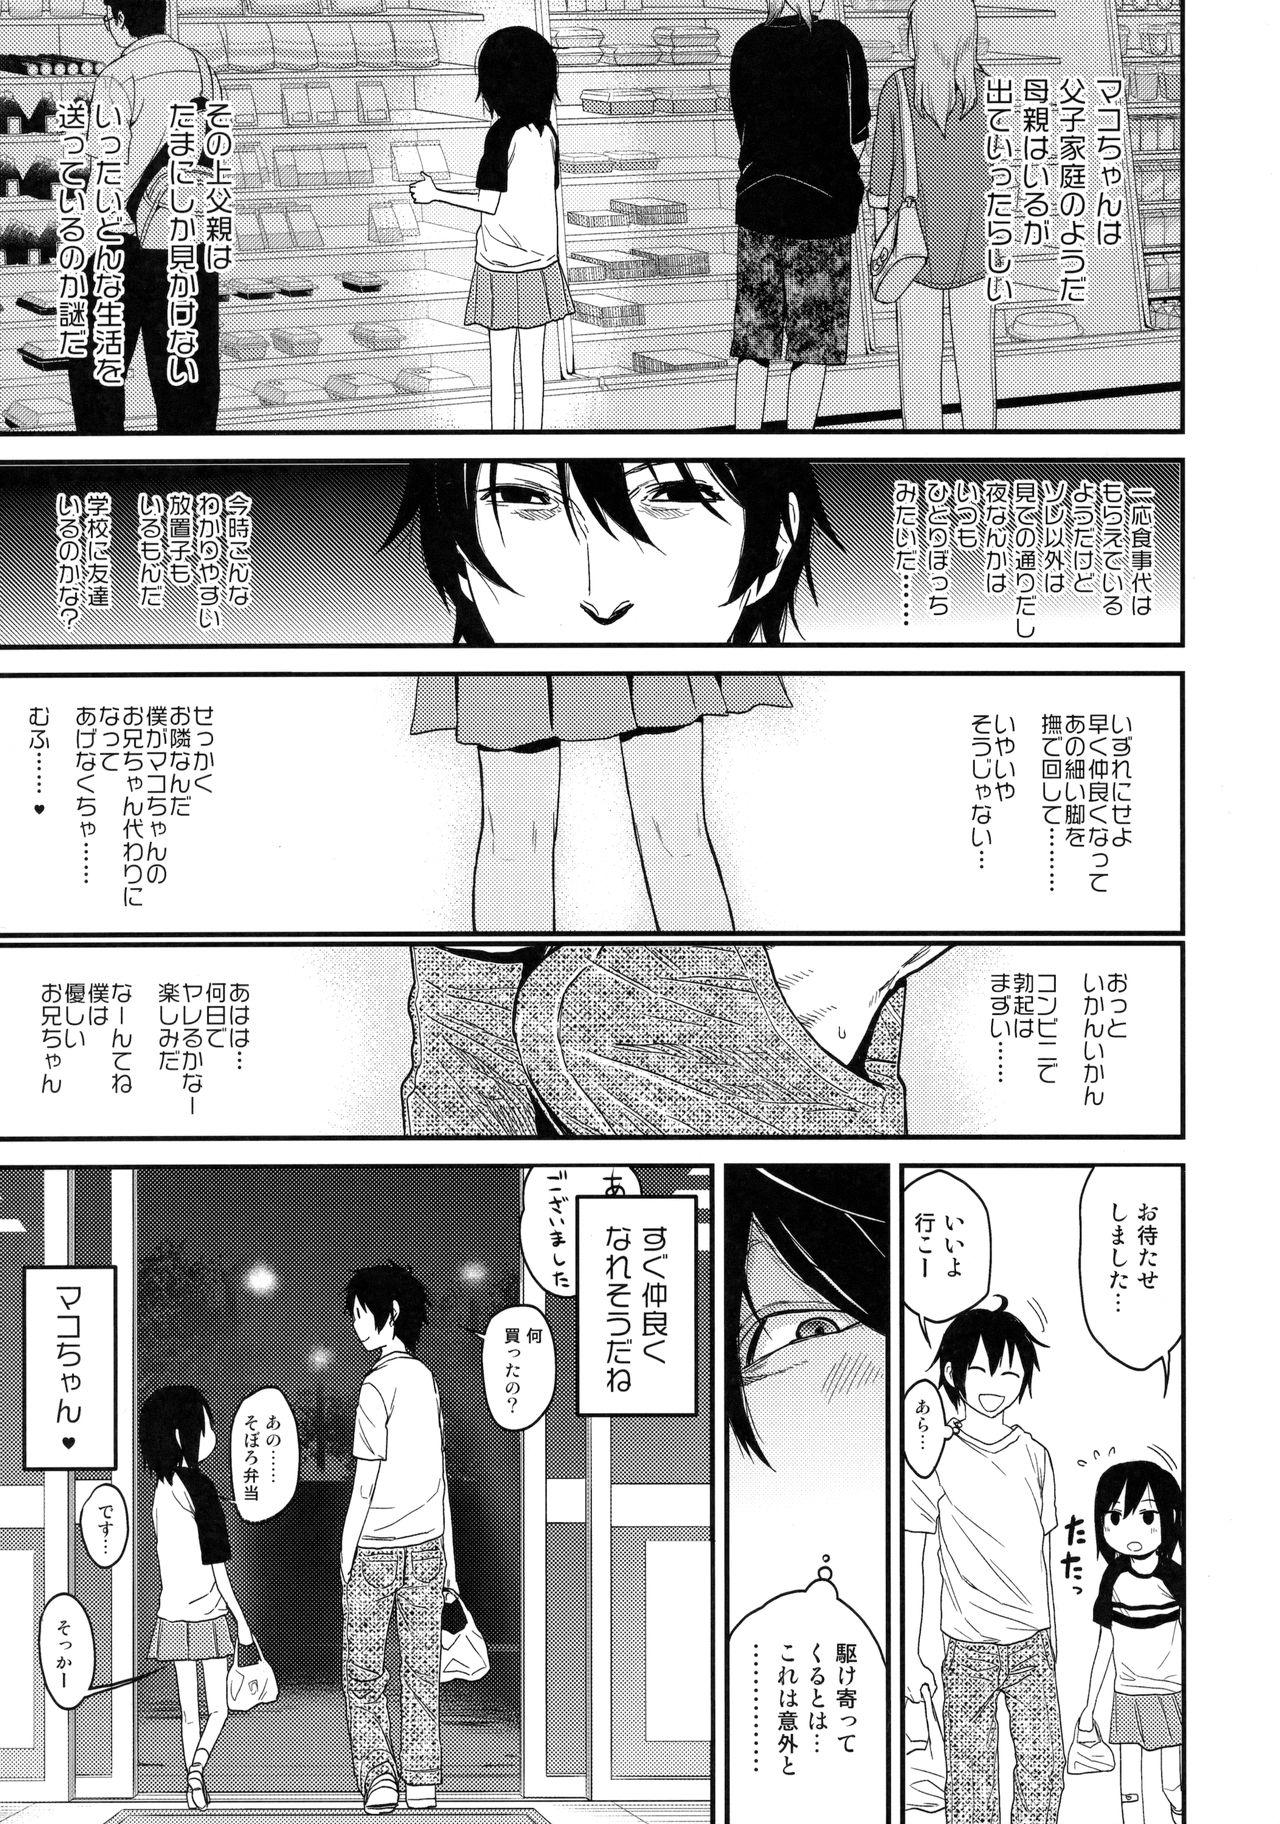 Mmd Tonari no Mako-chan Vol. 1 Ginger - Page 10